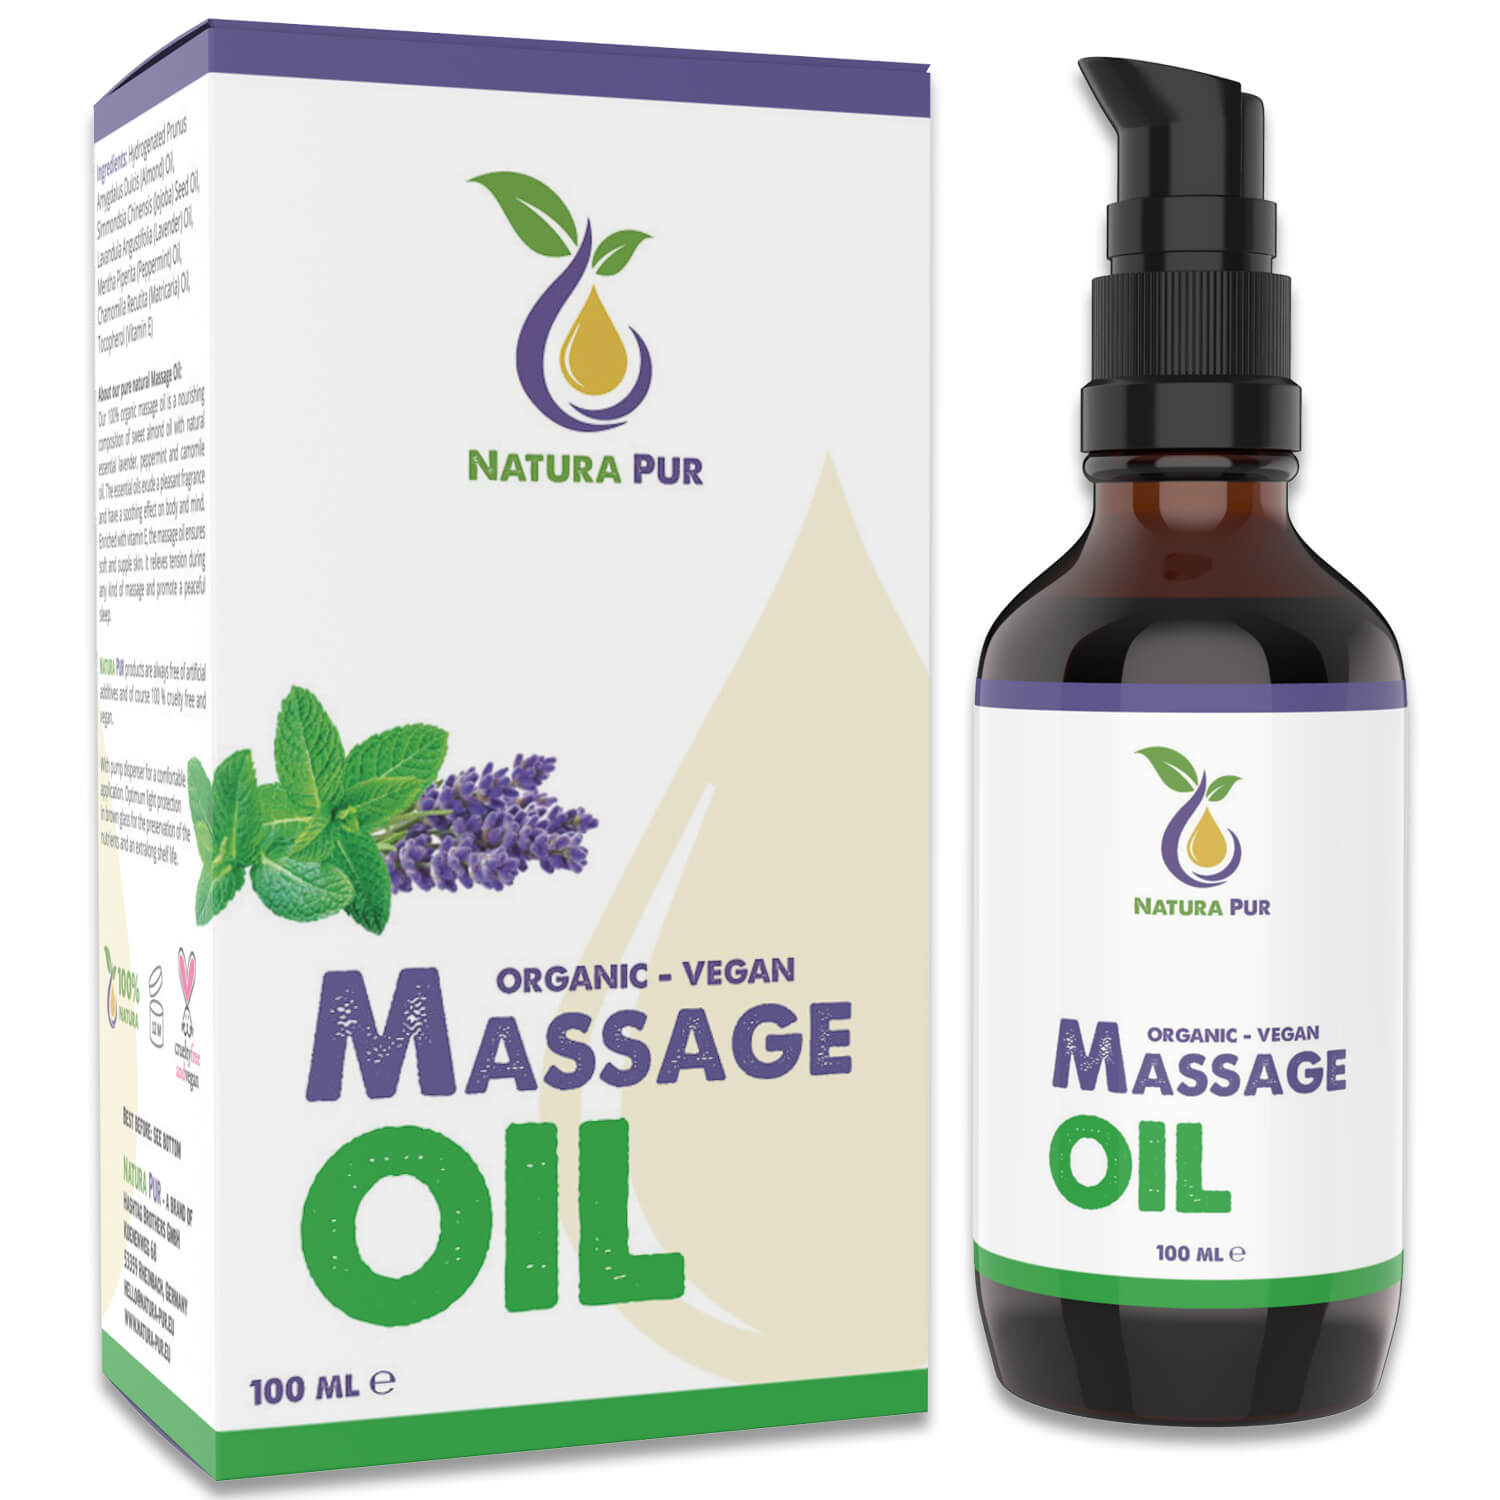 Massageöl BIO 100ml, vegan - Sinnliches Körperöl auf Basis von Mandelöl und Jojobaöl